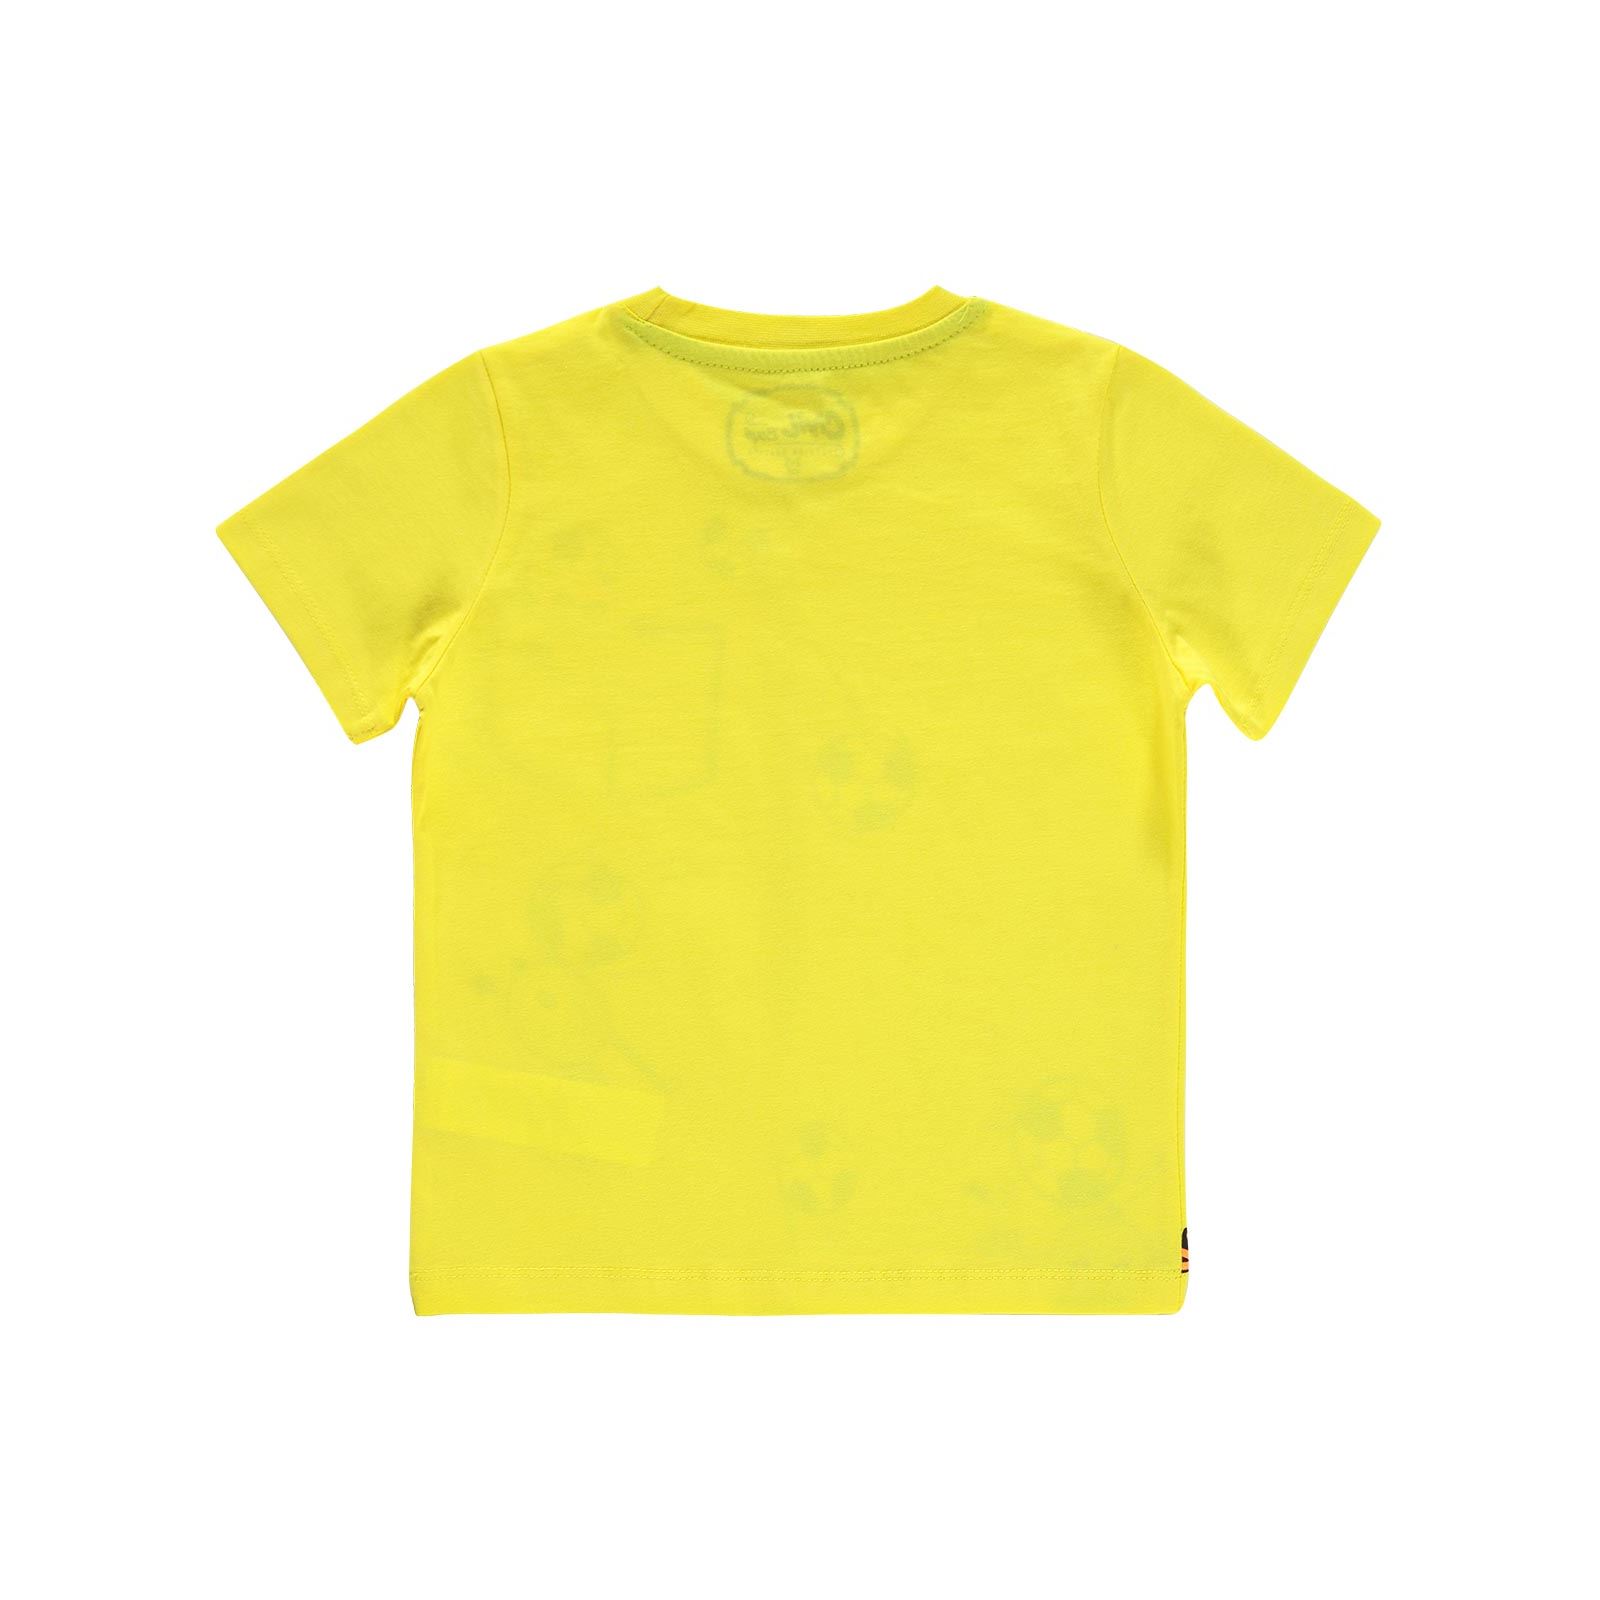 Cvl Boys Erkek Çocuk Tişört 2-5 Yaş Sarı